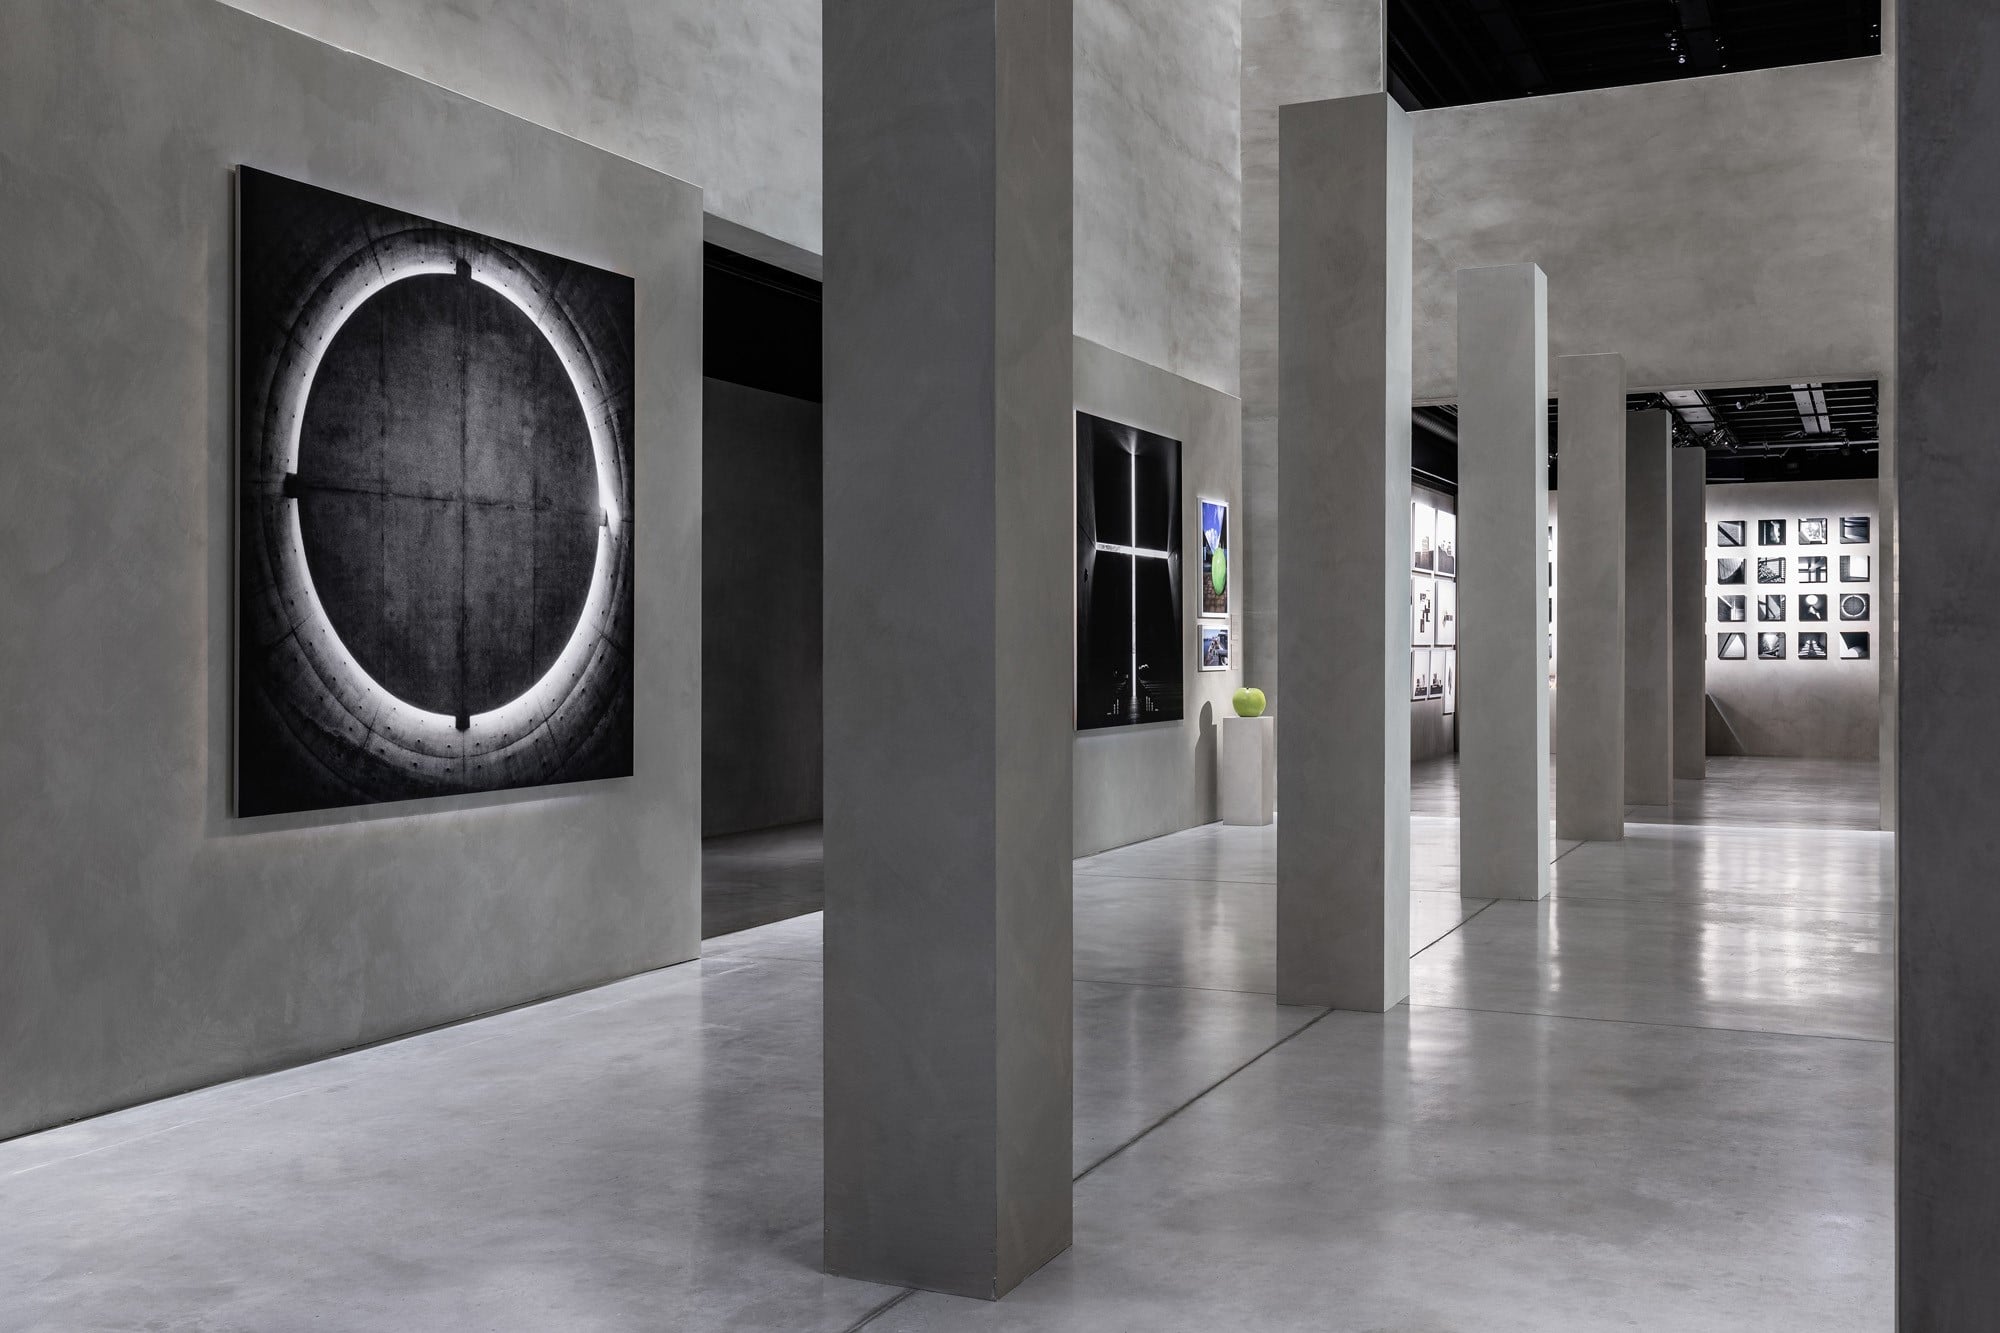 「アルマーニ / テアトロ」以降続く、ジョルジオ・アルマーニとの関係。2019年には「アルマーニ / シーロス」にて、’17年に国立新美術館で開催された「安藤忠雄展―挑戦―」と、これを再構成して’18年にポンピドゥー・センターで開催された「Le Défi」をもとにした「Tadao Ando. The Challenge」を開催した。Photography by © TADAO ANDO ARCHITECT & ASSOCIATES